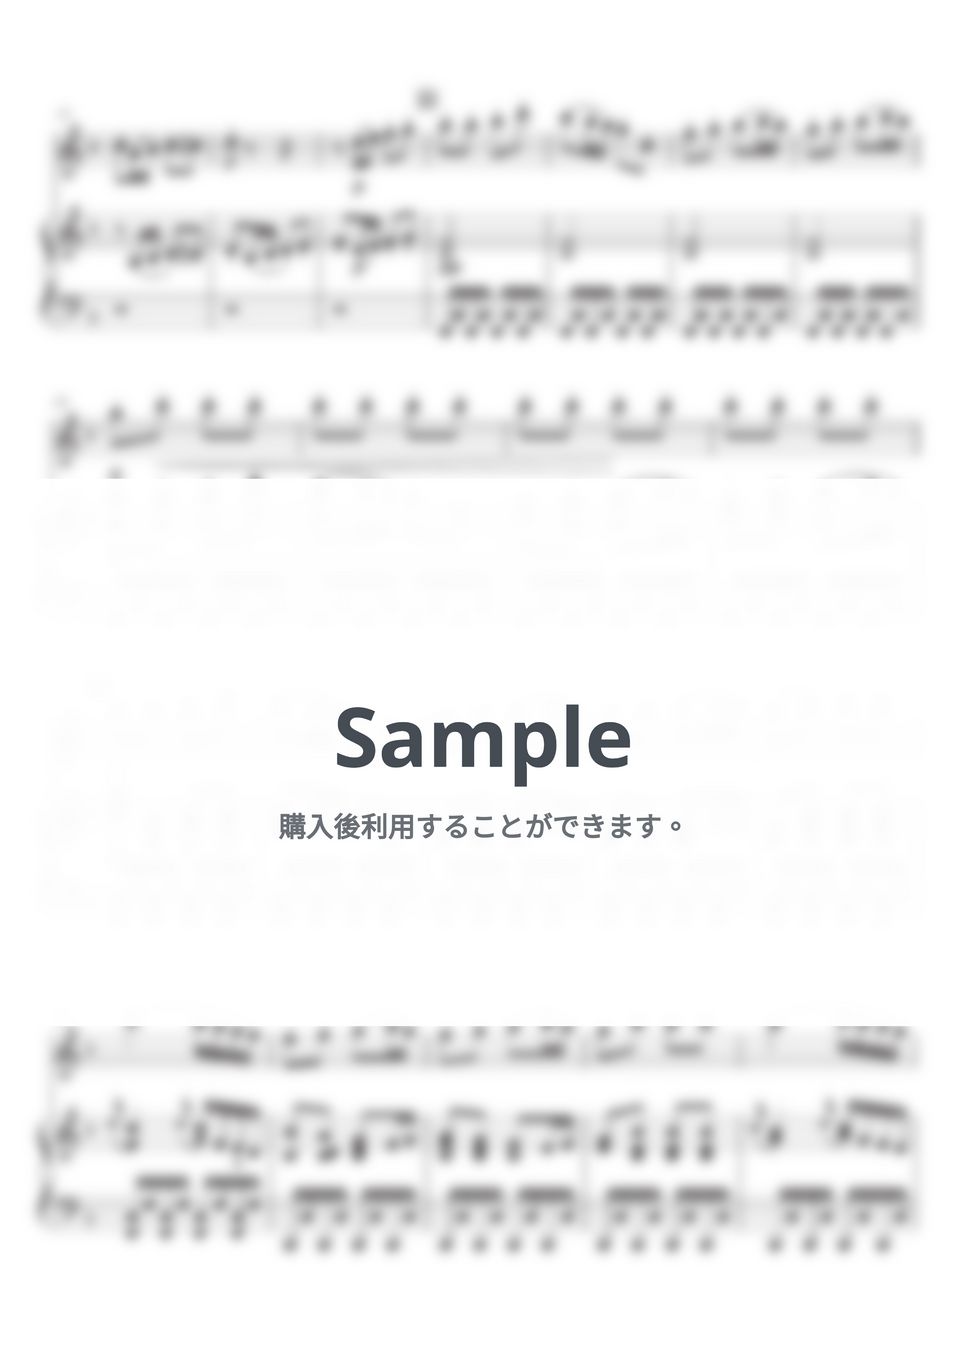 ベートーヴェン - 交響曲第6番「田園」 (メロディー(inC)＆伴奏) by SugarPM